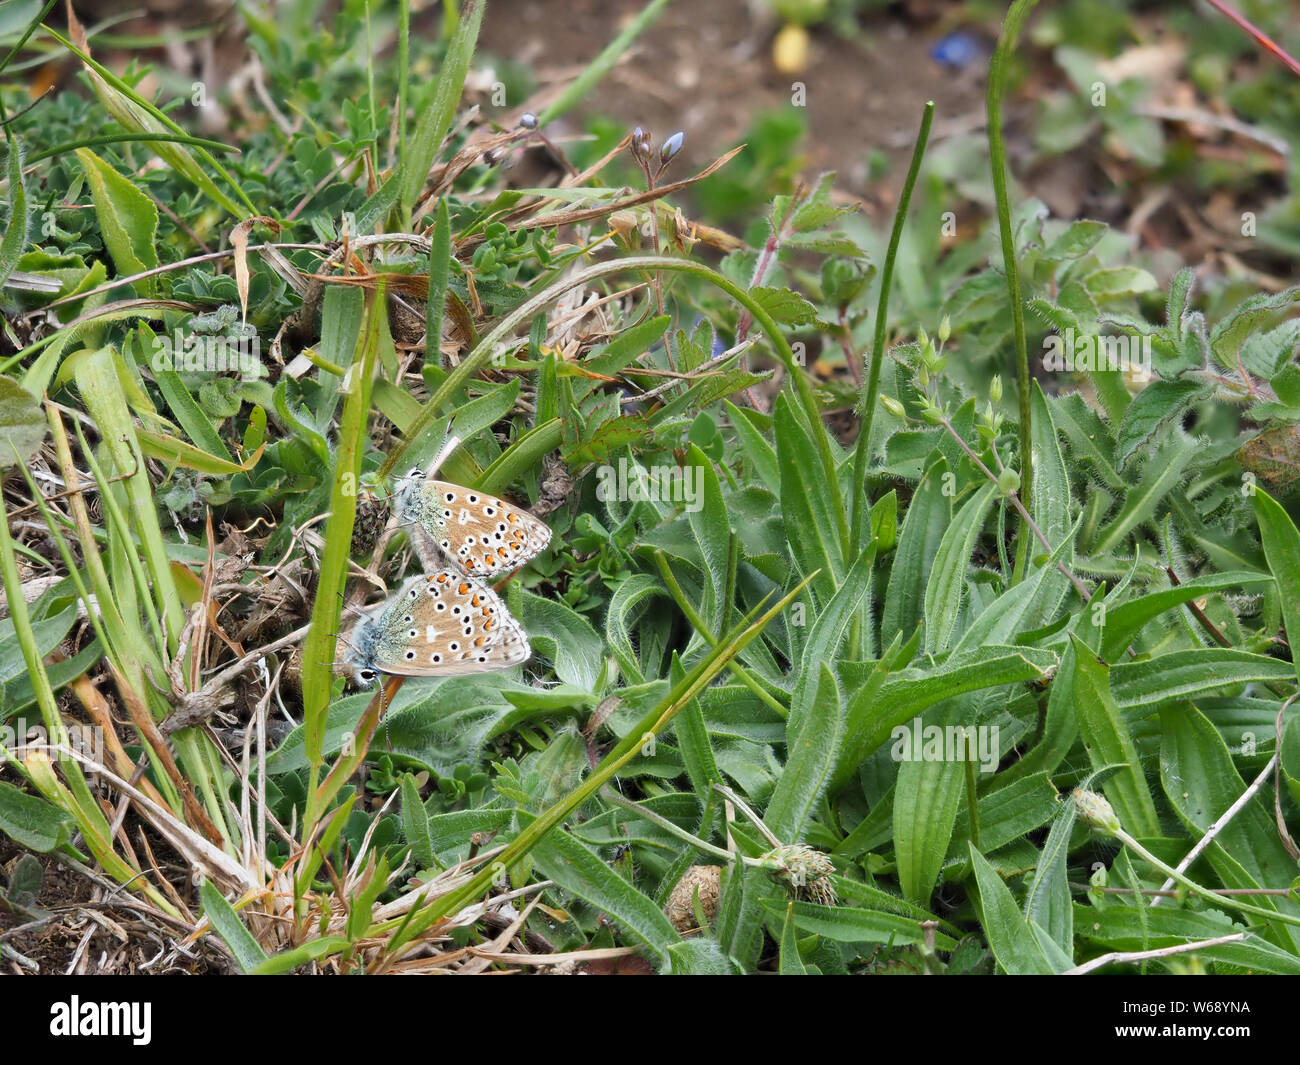 Adonis blau (Polyommatus bellargus) Schmetterlinge Verpaarung. Stockfoto